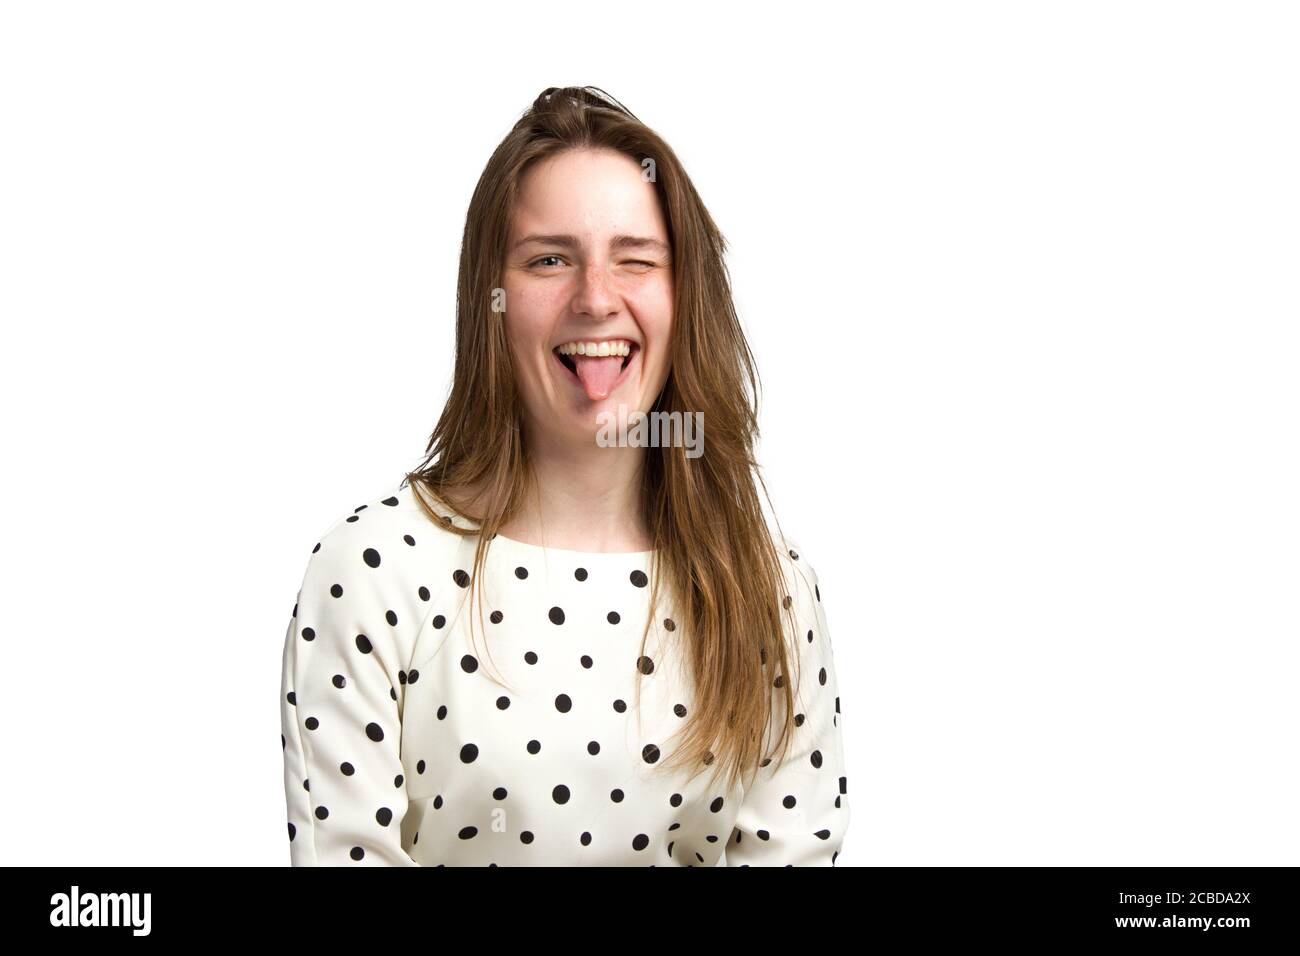 una giovane donna in un abito bianco a pois. Stacca la lingua, isolata in bianco Foto Stock